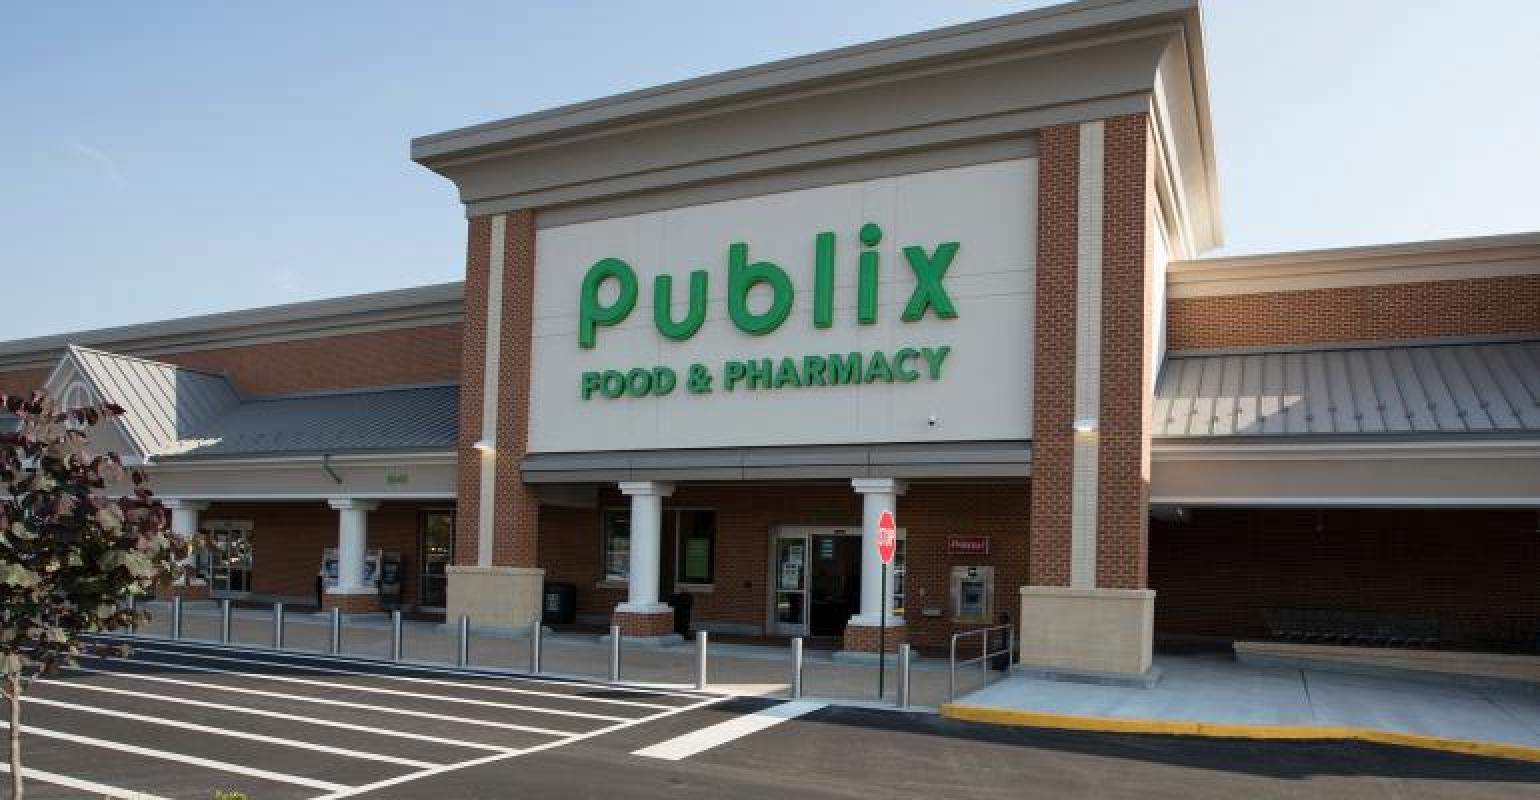 Publix named top US supermarket for customer service